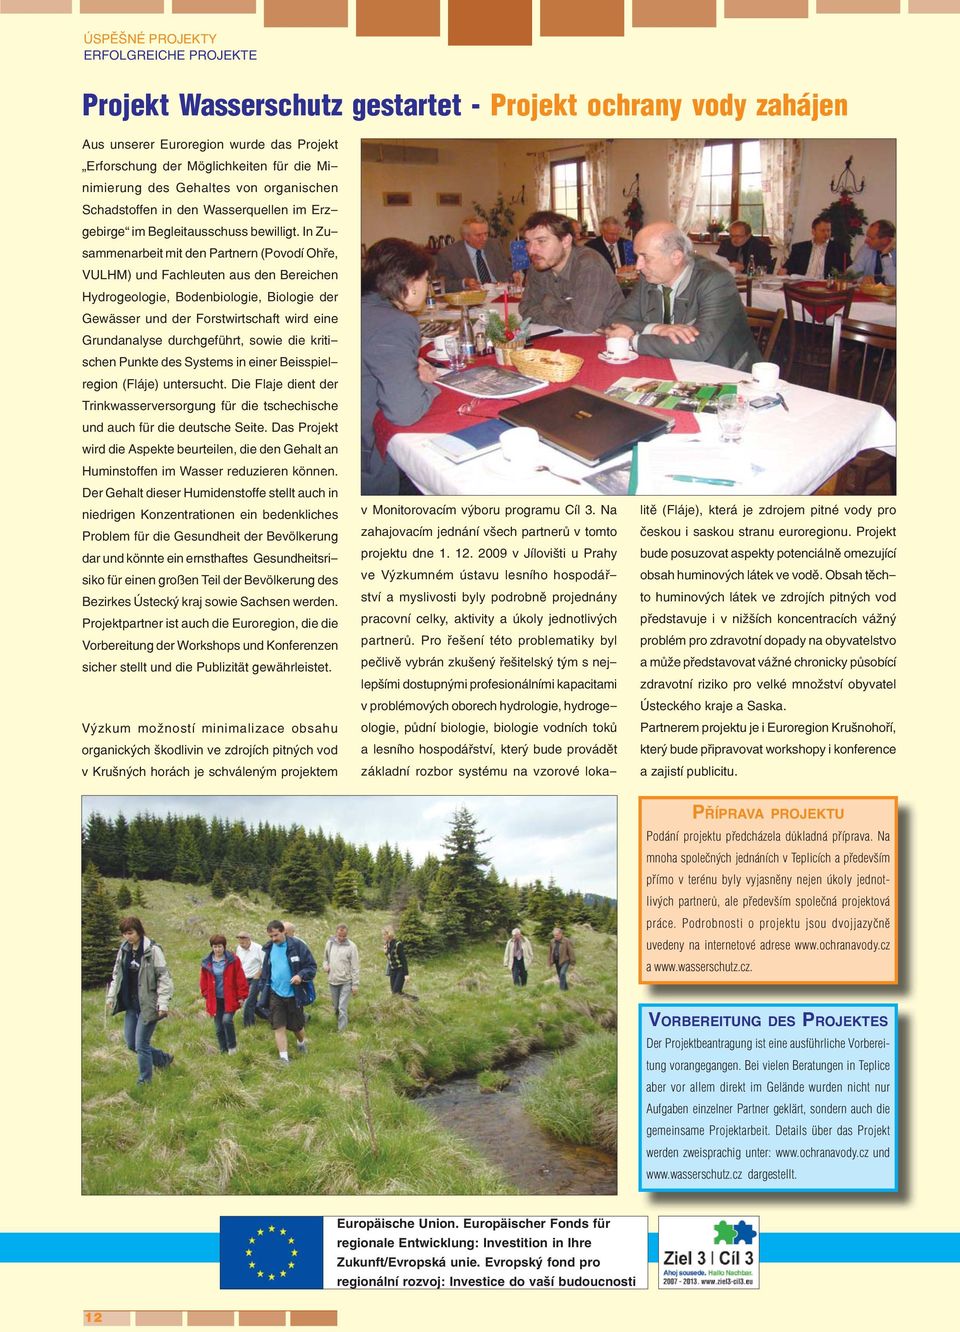 In Zusammenarbeit mit den Partnern (Povodí Ohře, VULHM) und Fachleuten aus den Bereichen Hydrogeologie, Bodenbiologie, Biologie der Gewässer und der Forstwirtschaft wird eine Grundanalyse